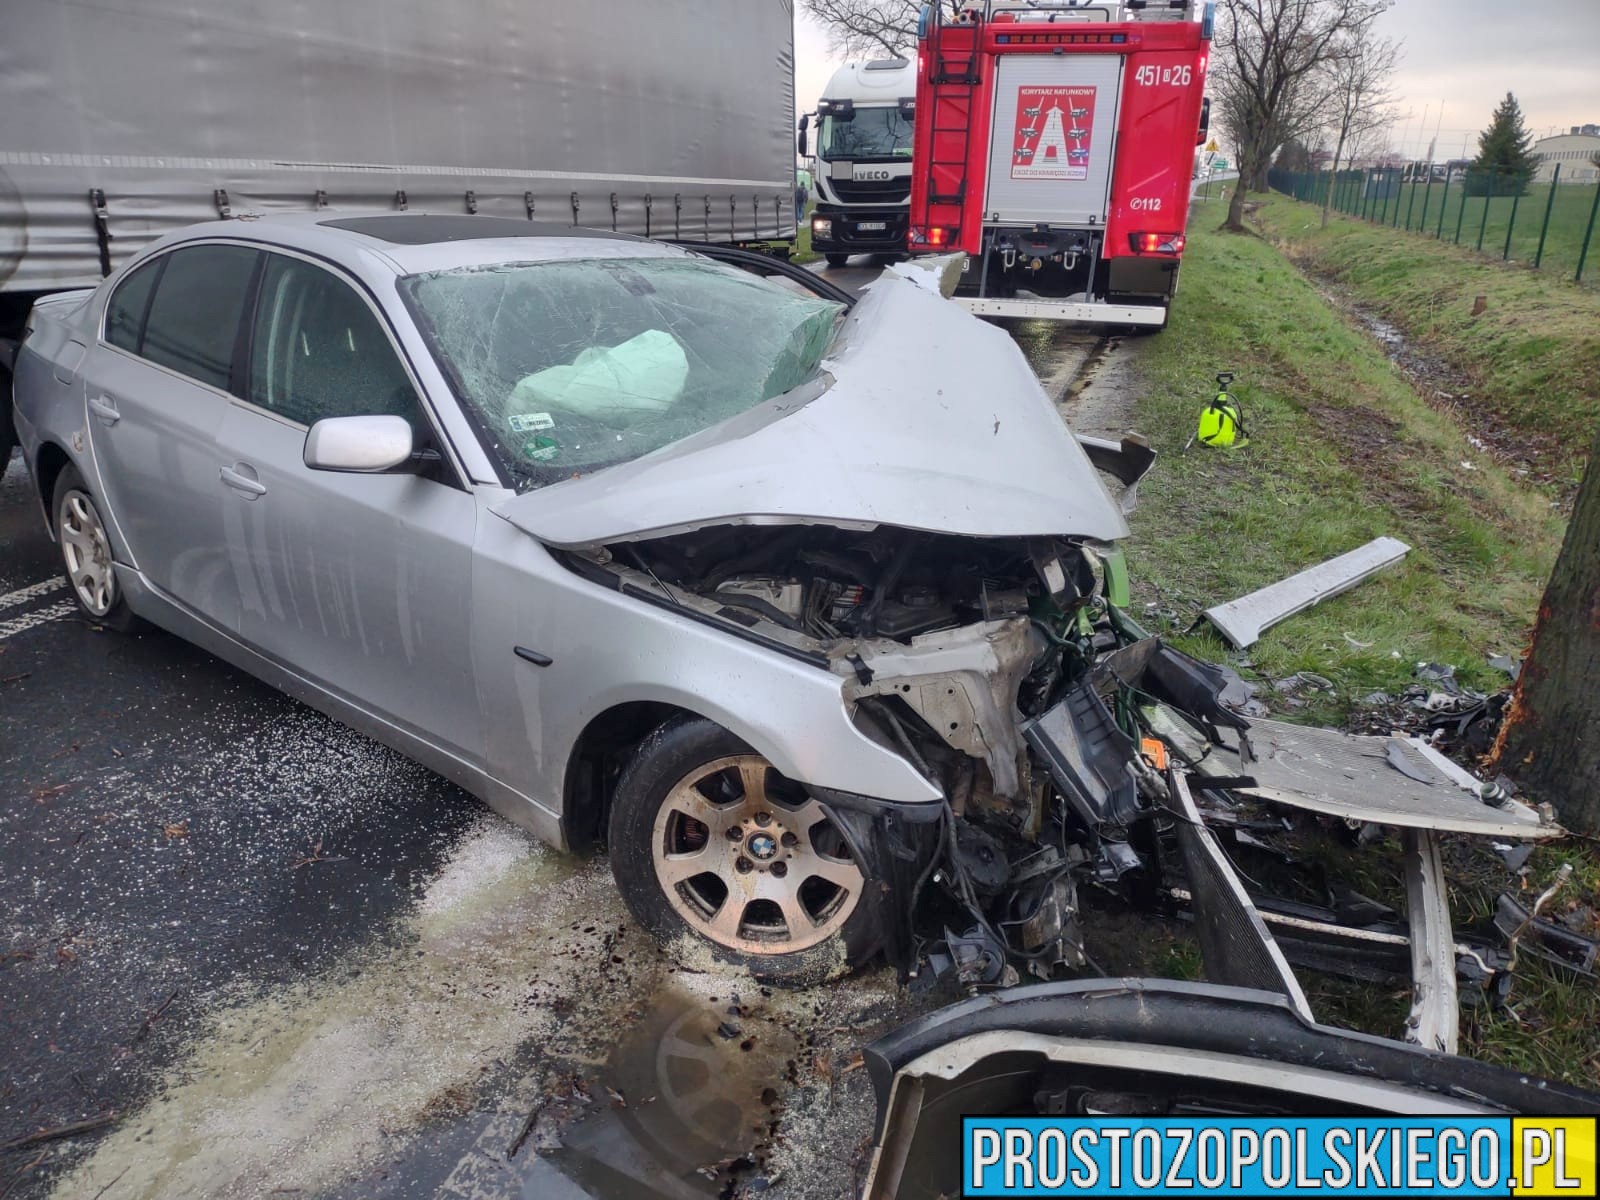 W poniedziałek 25 marca o godzinie 5:40 na ul. Oleśnickiej w Namysłowie doszło do zdarzenia drogowego z udziałem BMW.